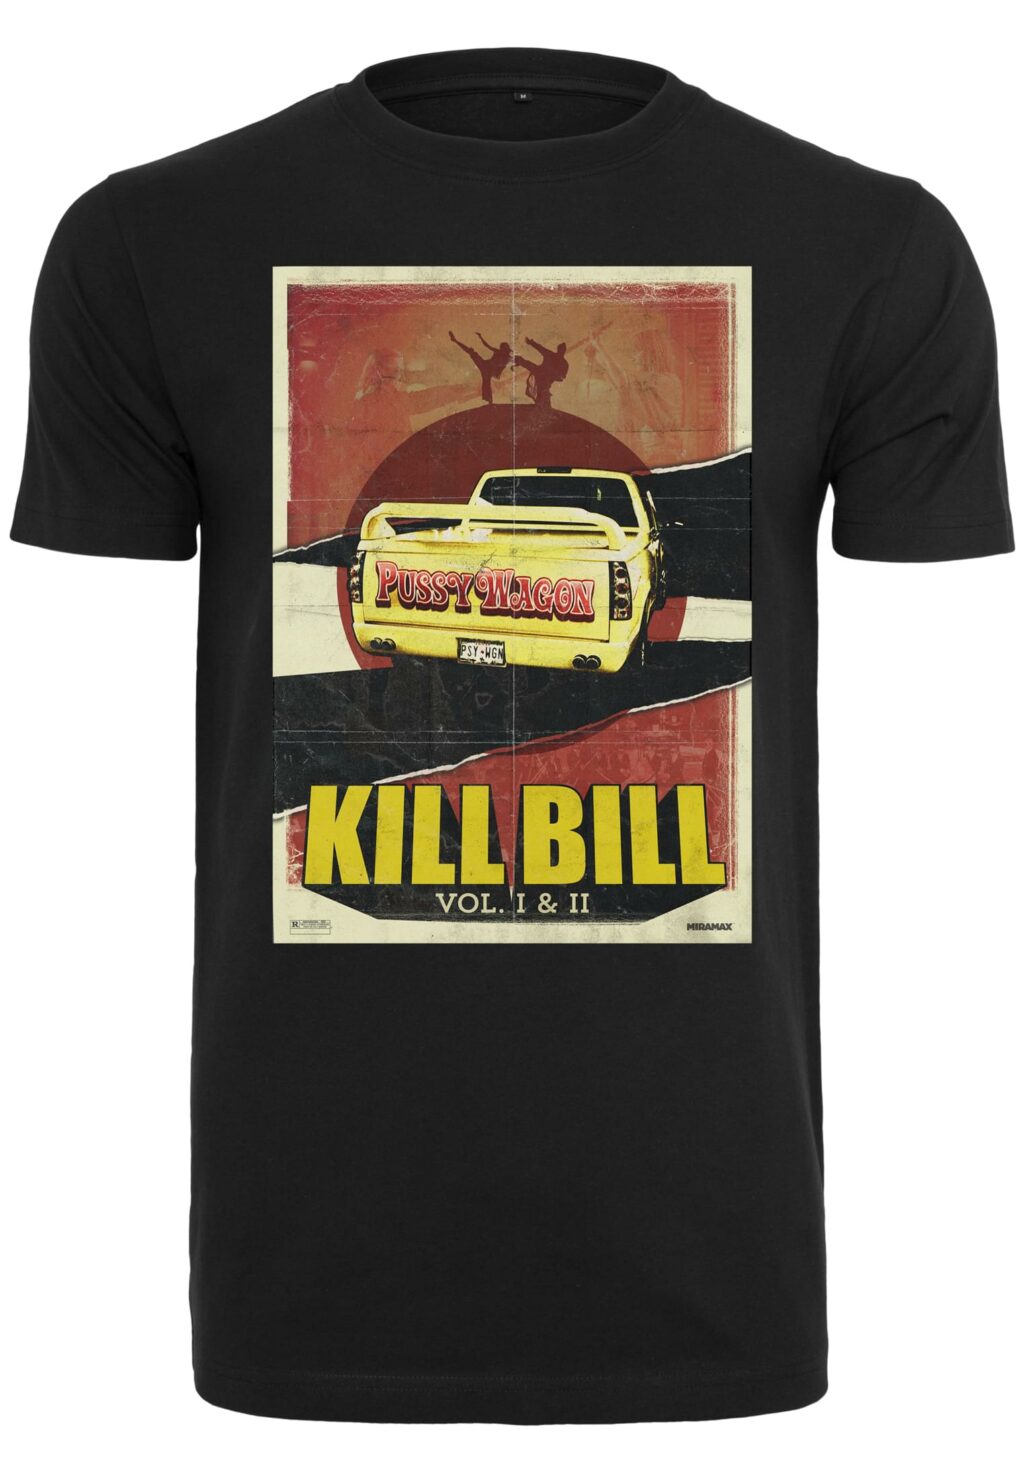 Kill Bill Pussy Wagon Tee black MC846